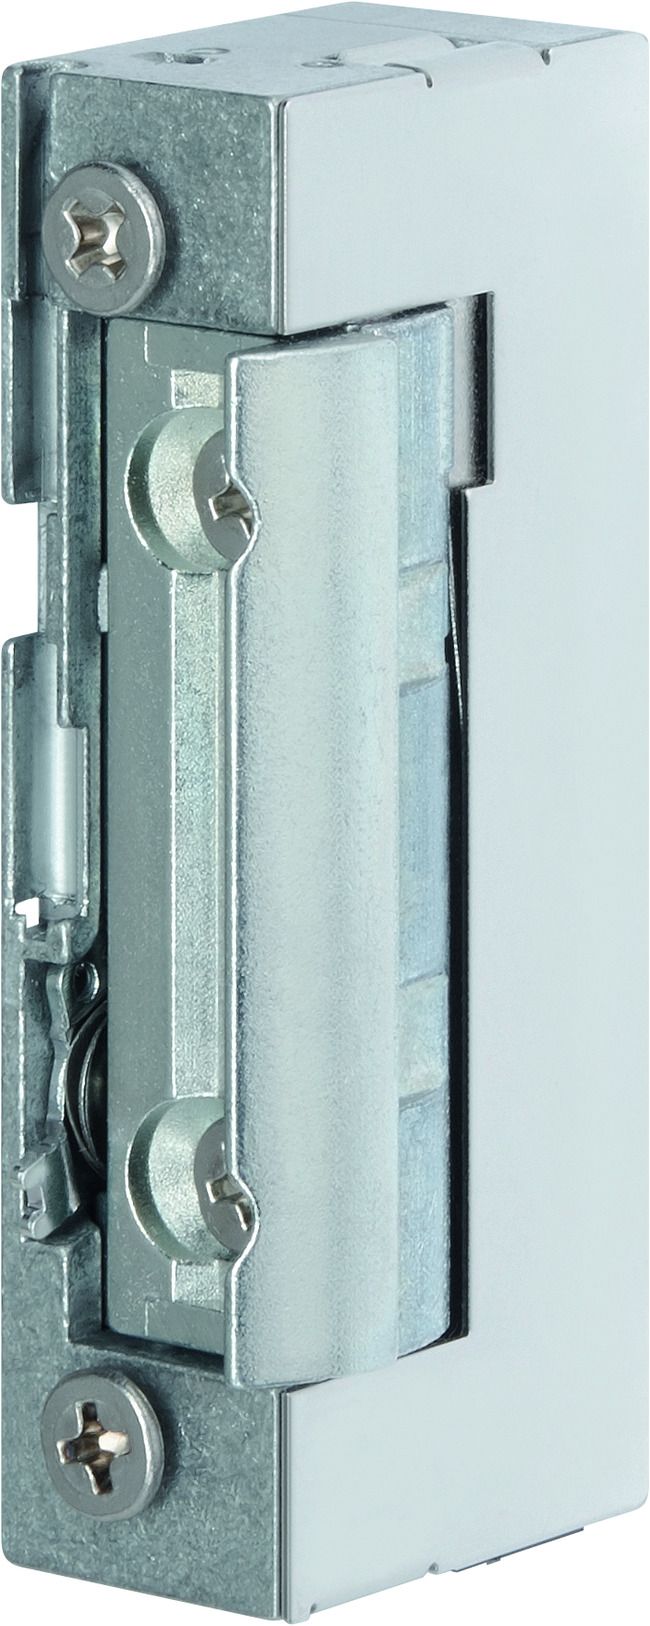 Elektrischer Türöffner mit Schließblech - 12V (DL6000P) ELRO